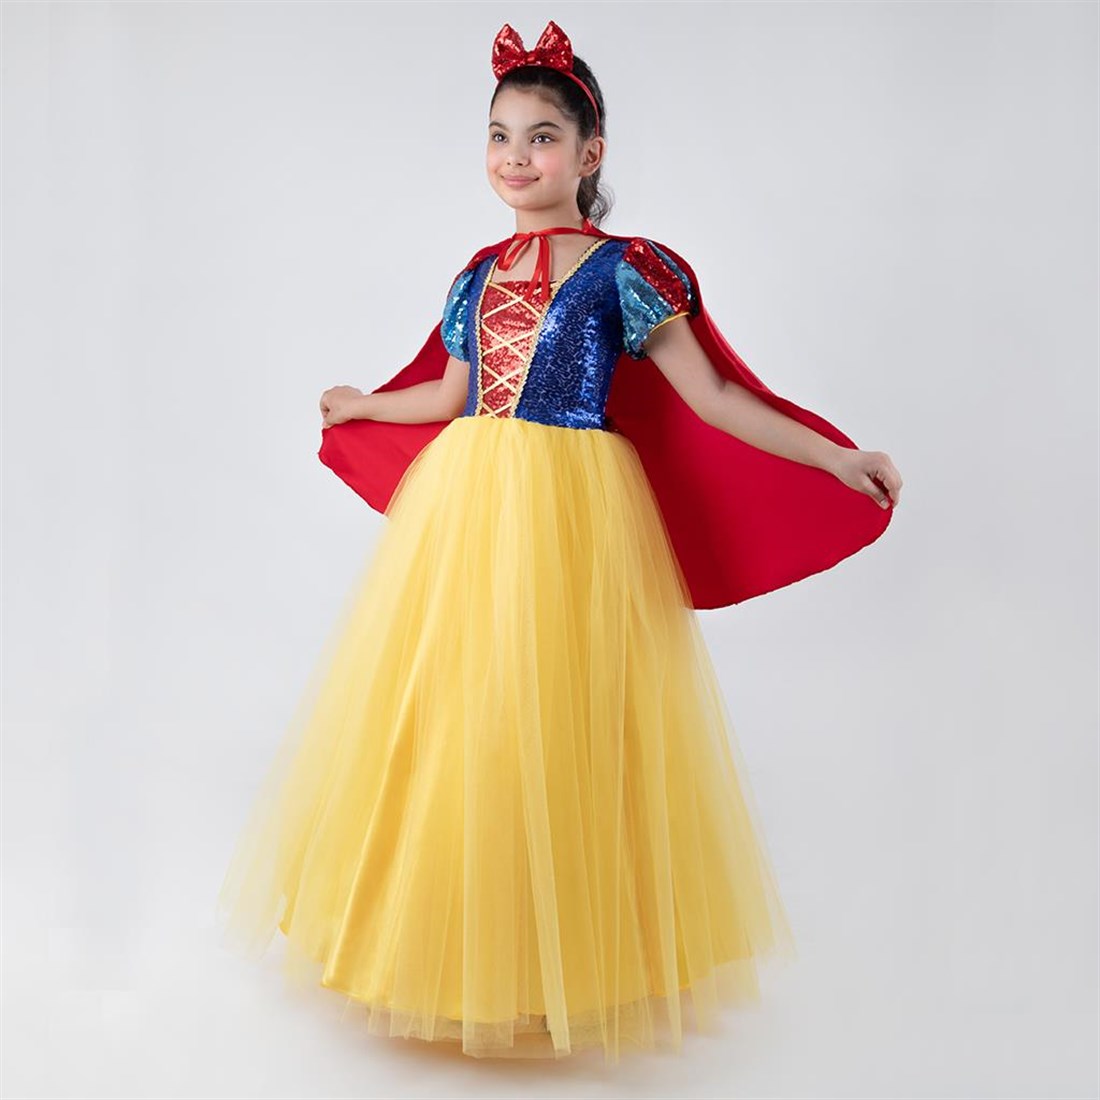 Pamuk Prenses Kostümü - Pelerinli Prenses Kostümü Full Set 5-7 Yaş (CLZ)